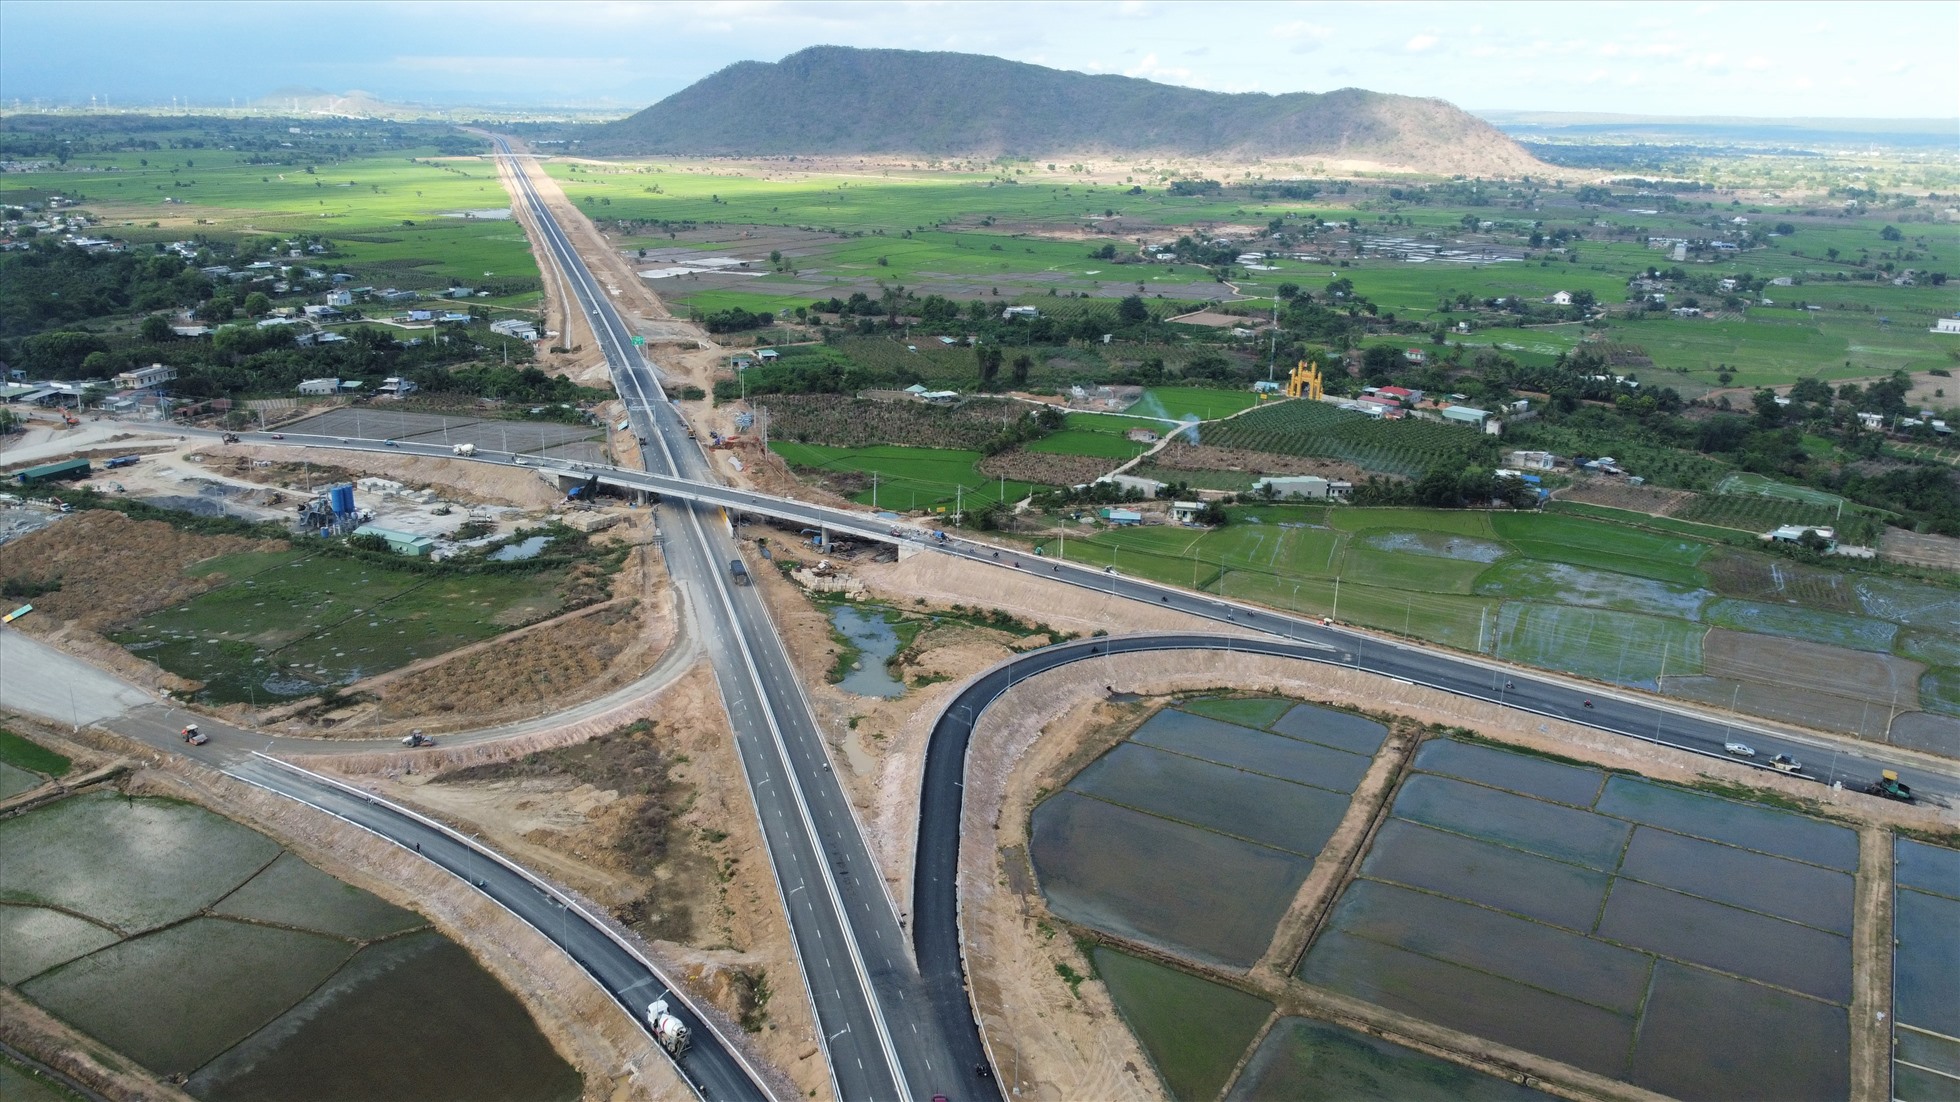 Tại vị trí nút giao cao tốc Vĩnh Hảo - Phan Thiết với Quốc lộ 28 qua huyện Hàm Thuận Bắc Bình Thuận được thiết kế với các đường vào cao tốc, đường từ cao tốc ra Quốc lộ 28 và cầu vượt dân sinh.